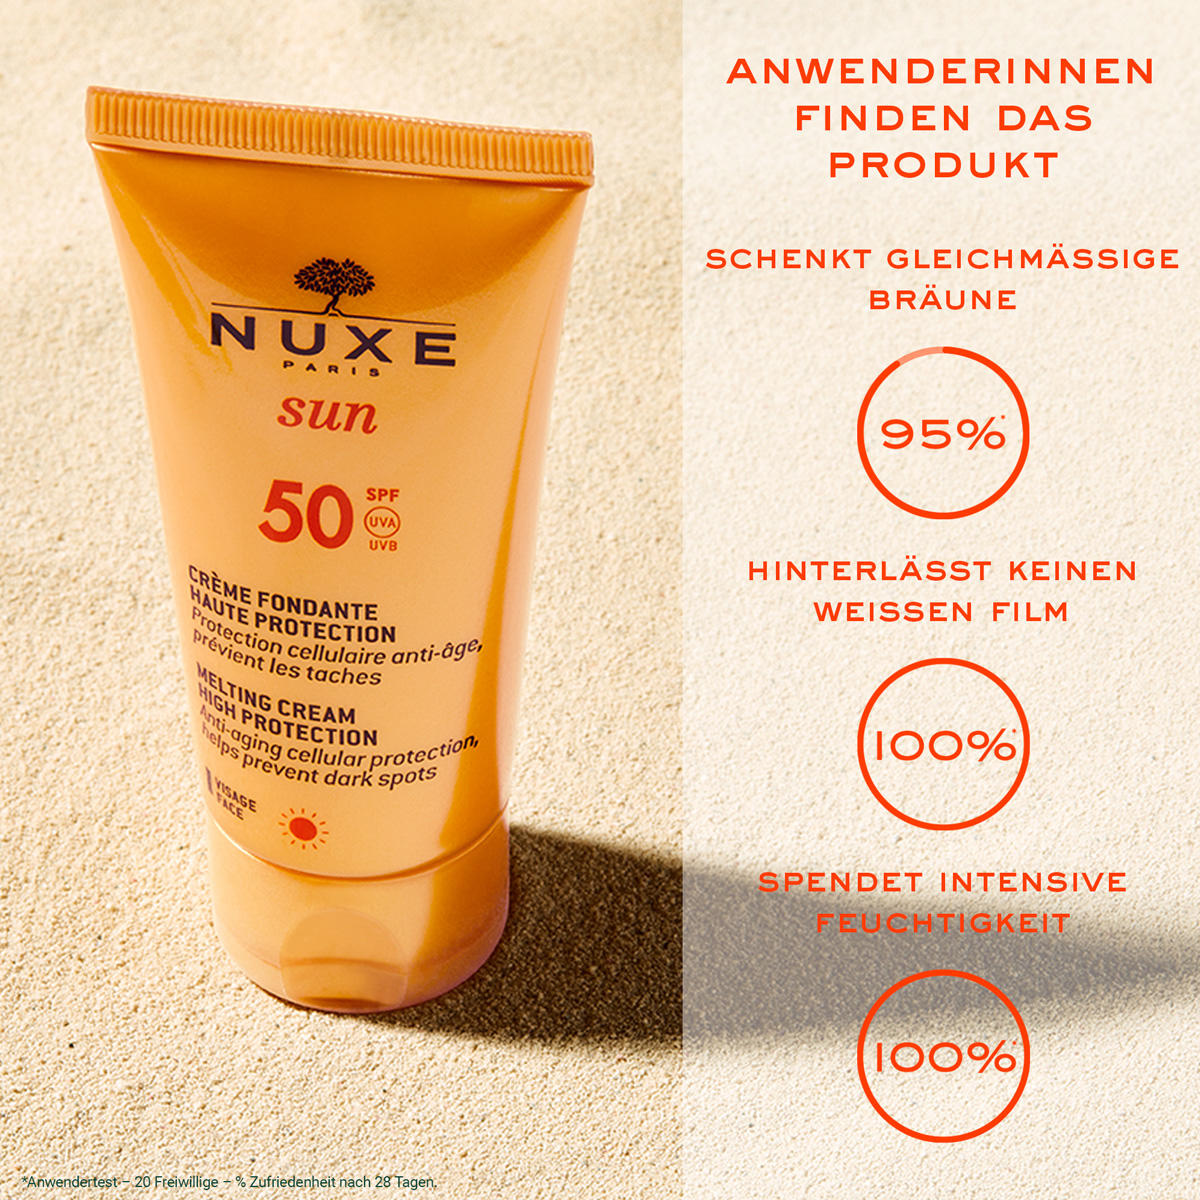 NUXE Sun Crème fondante haute protection SFP 50 50 ml - 2